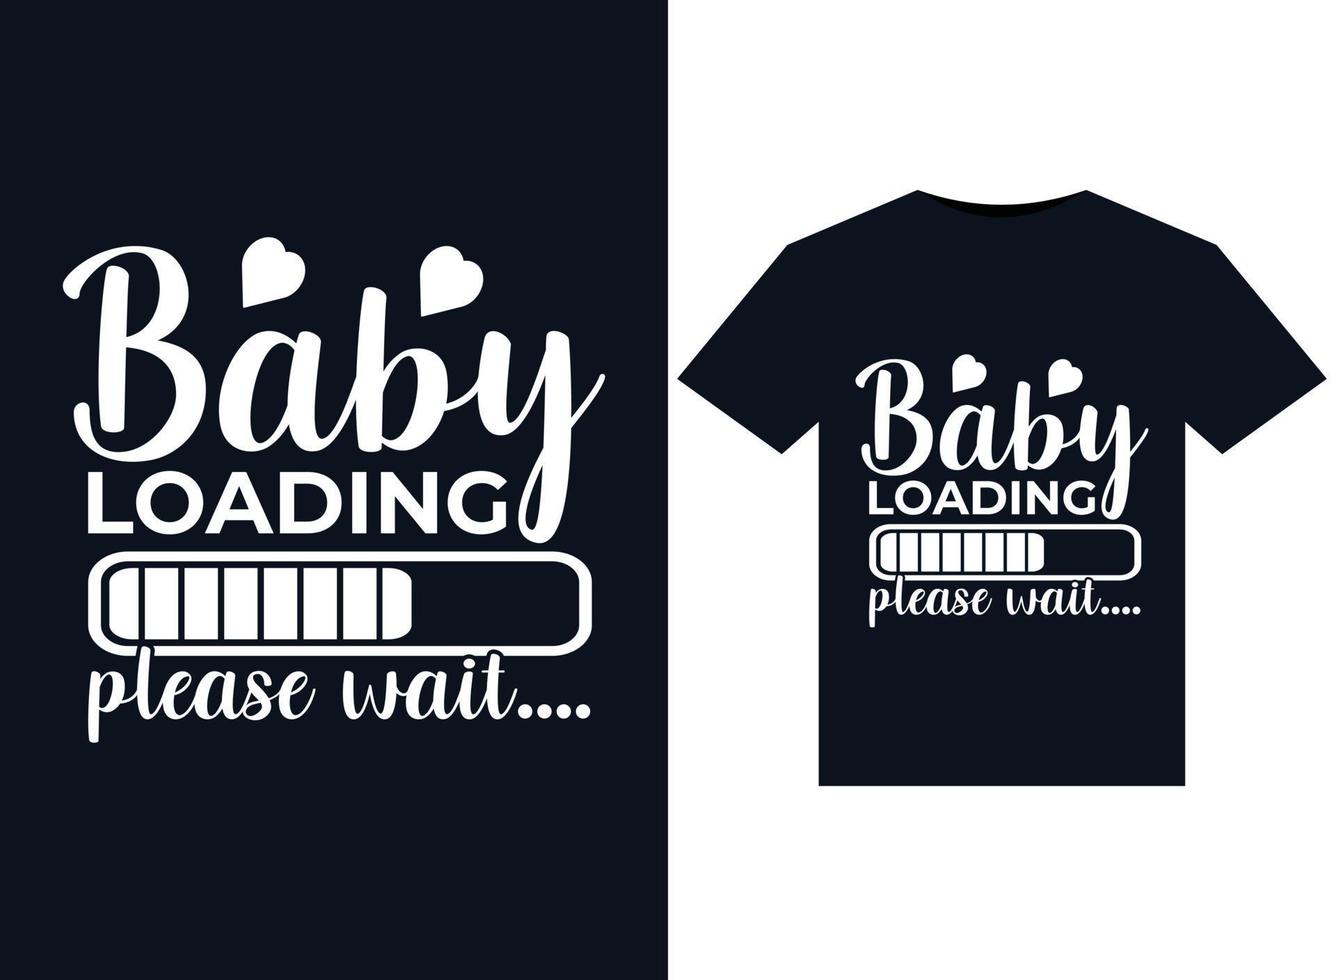 bebê carregando, por favor, espereilustrações para design de camisetas prontas para impressão vetor